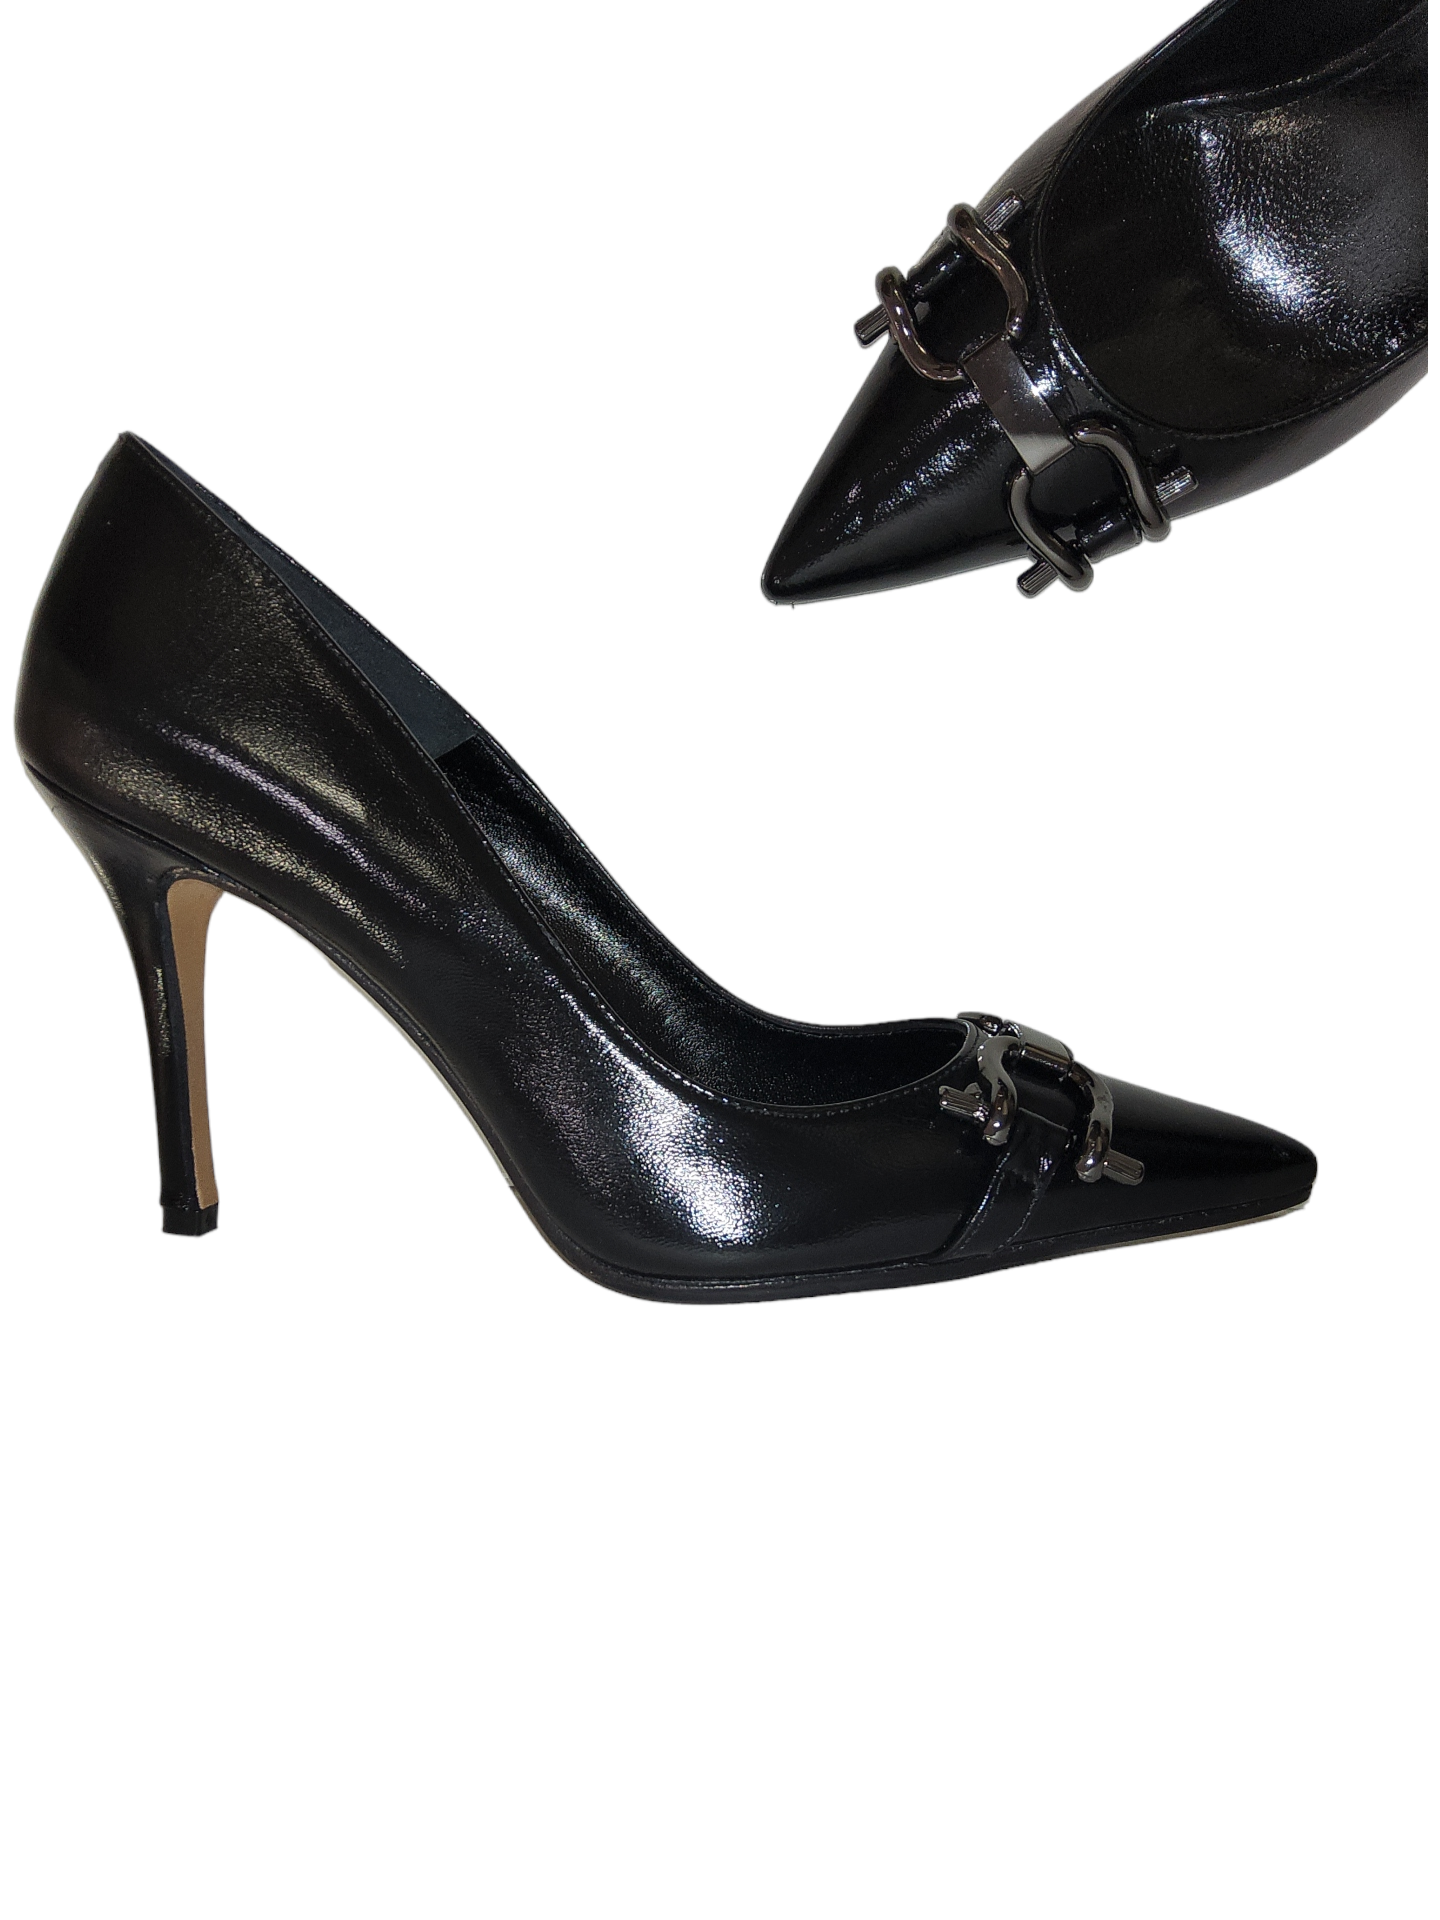 Black Court shoe